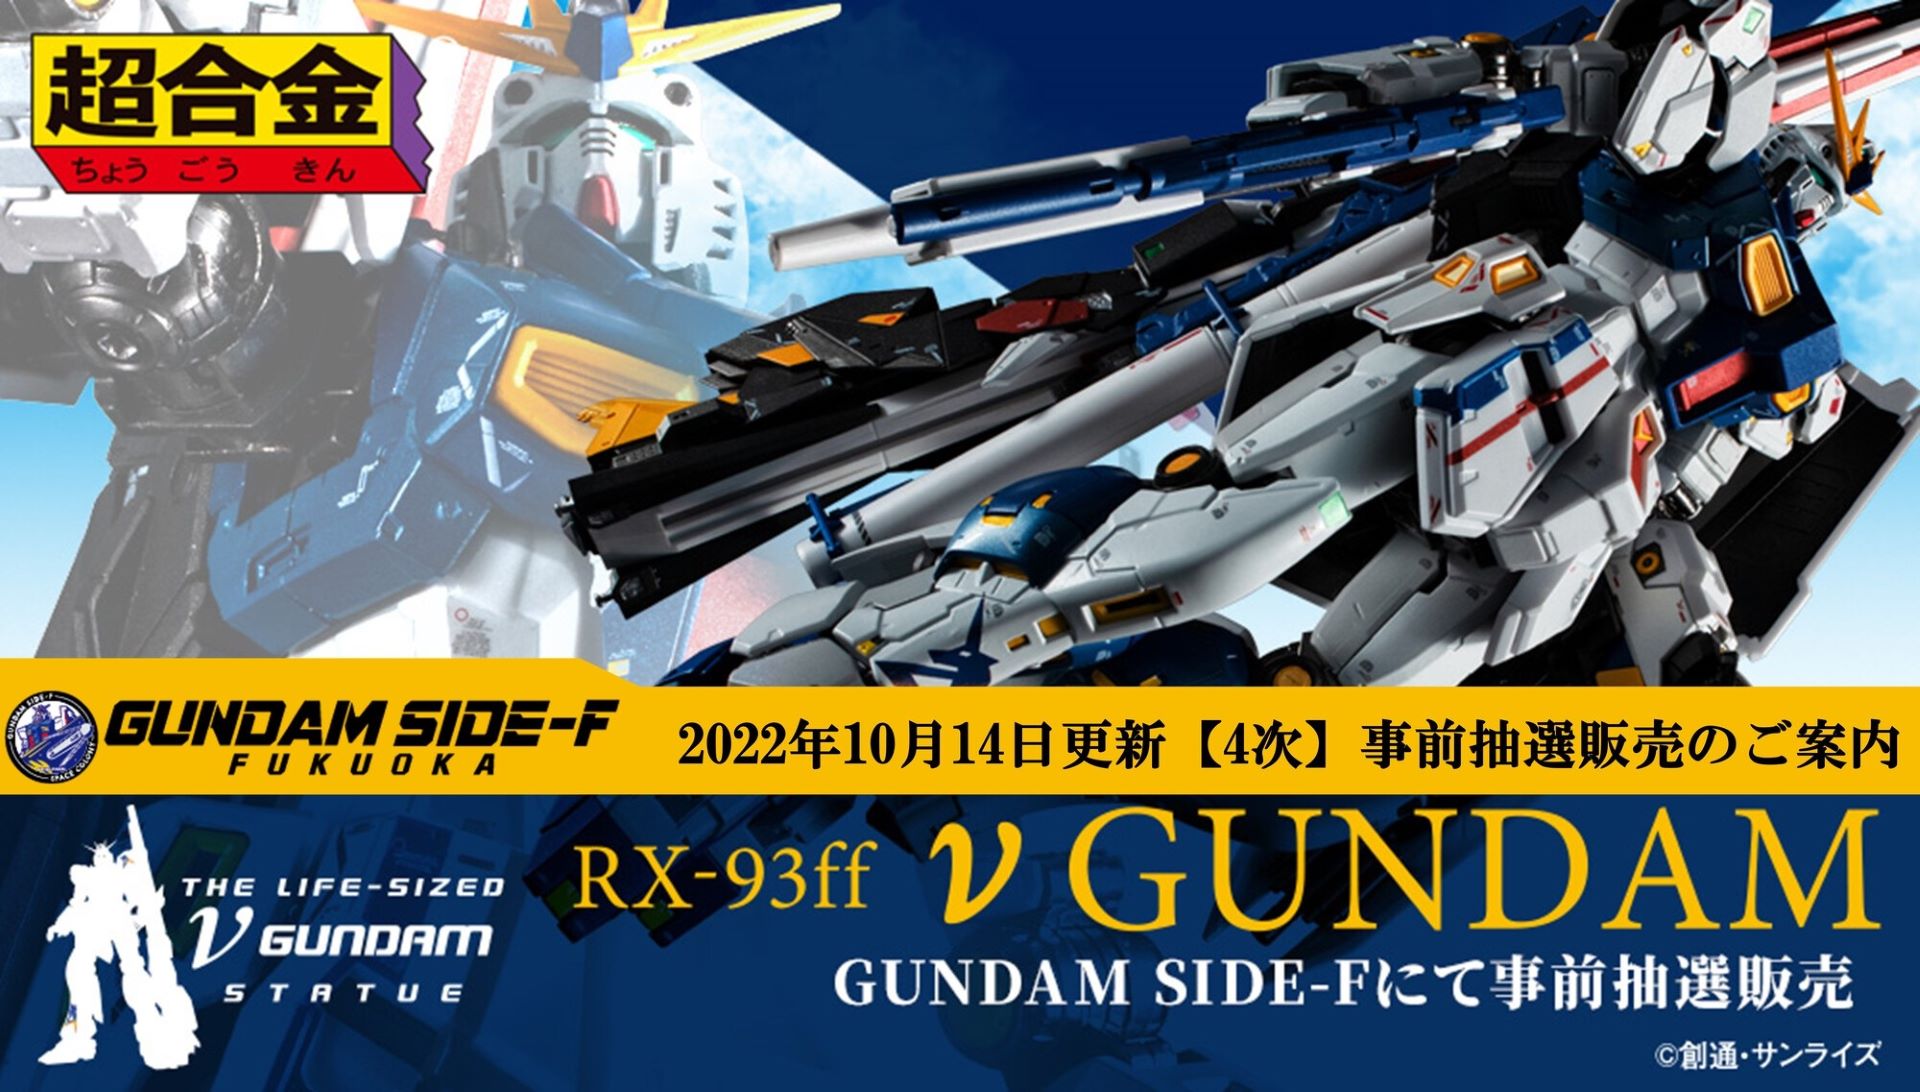 超合金 RX-93ff νガンダム GUNDAM SIDE F 福岡 限定